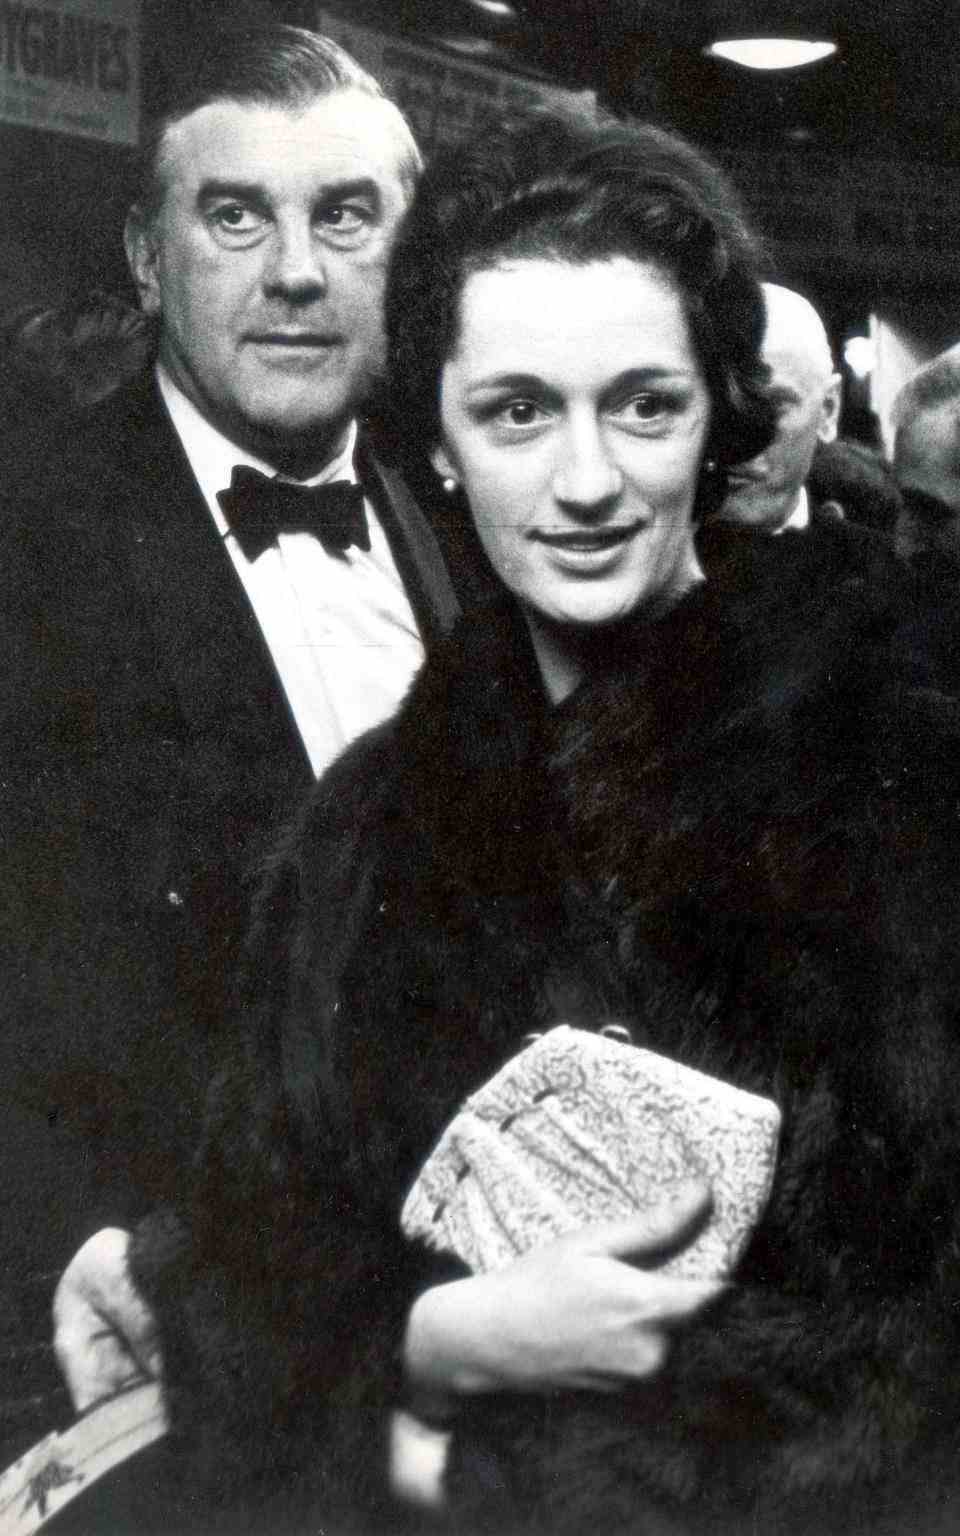 Lady Hussey, photographiée avec son mari Marmaduke en 1966, a rejoint la famille royale en 1960 - Daily Mail/Shutterstock